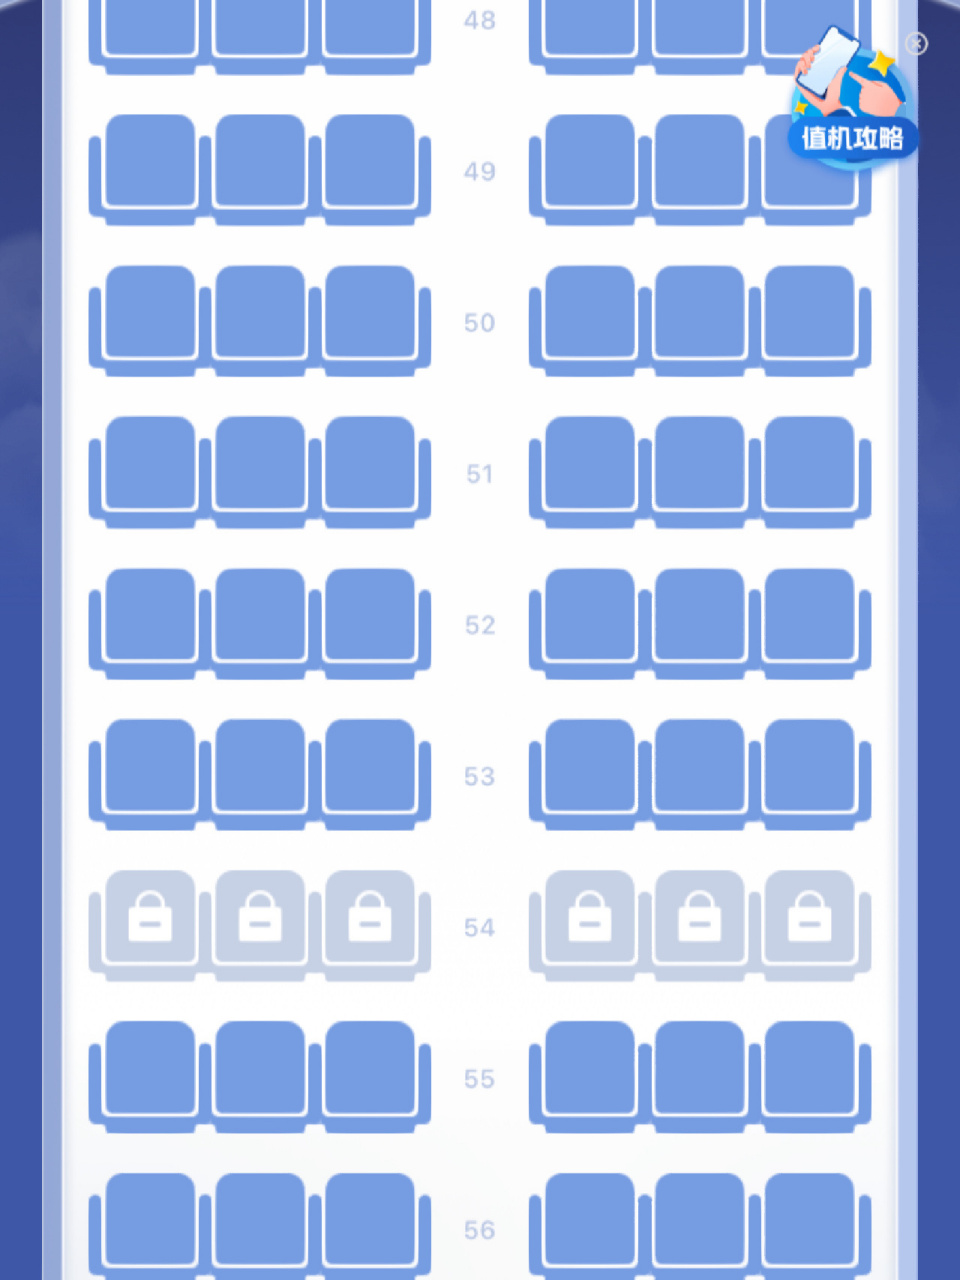 空客32a机型座位图图片